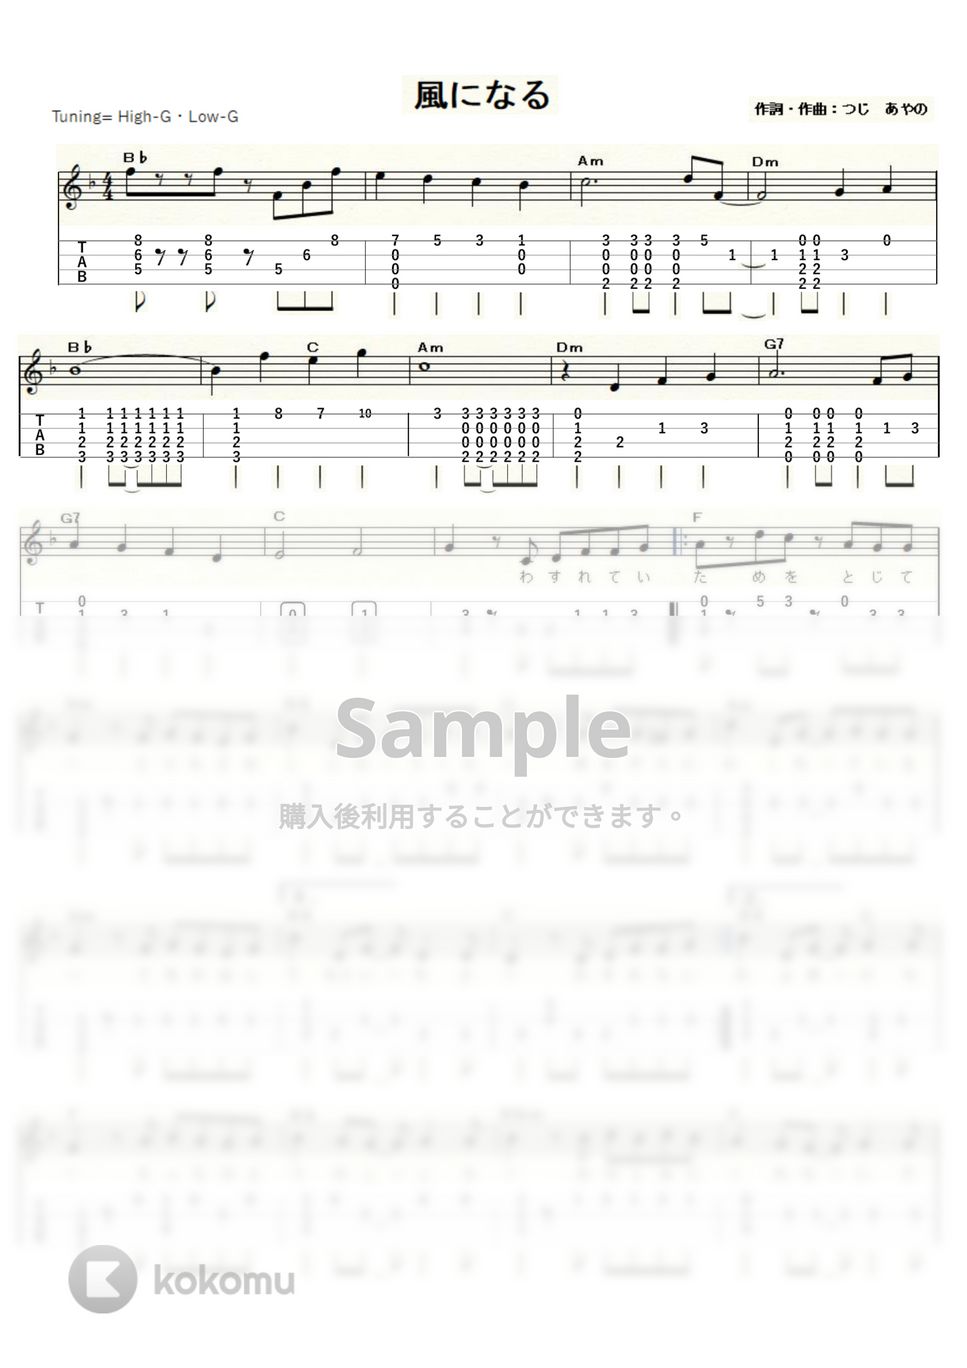 つじあやの - 風になる～猫の恩返し～ (ｳｸﾚﾚｿﾛ / High-G,Low-G / 中級) by ukulelepapa